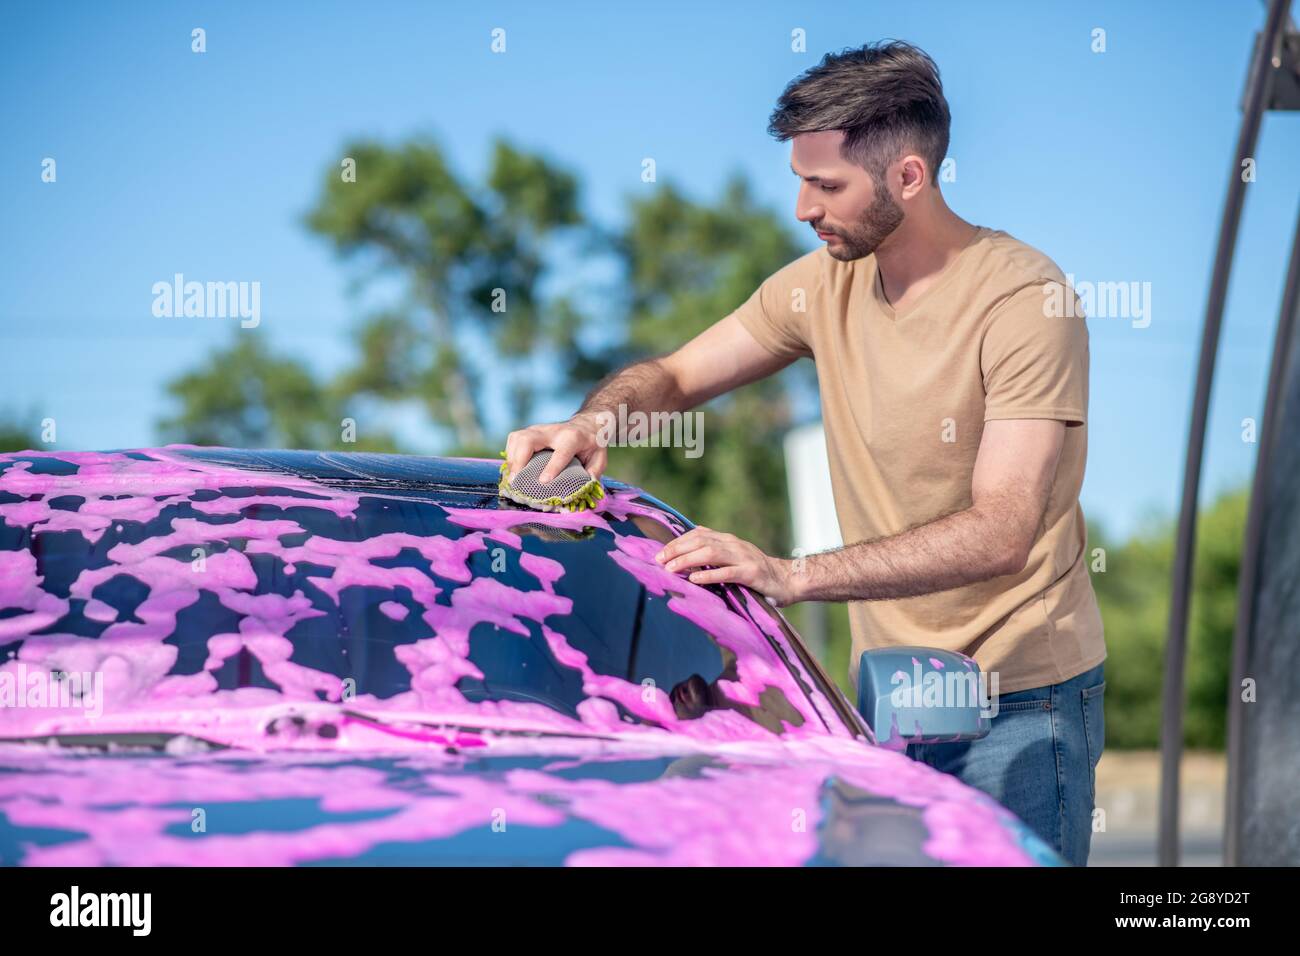 Profil eines Mannes, der Schaum mit Serviette auf dem Auto wischte Stockfoto